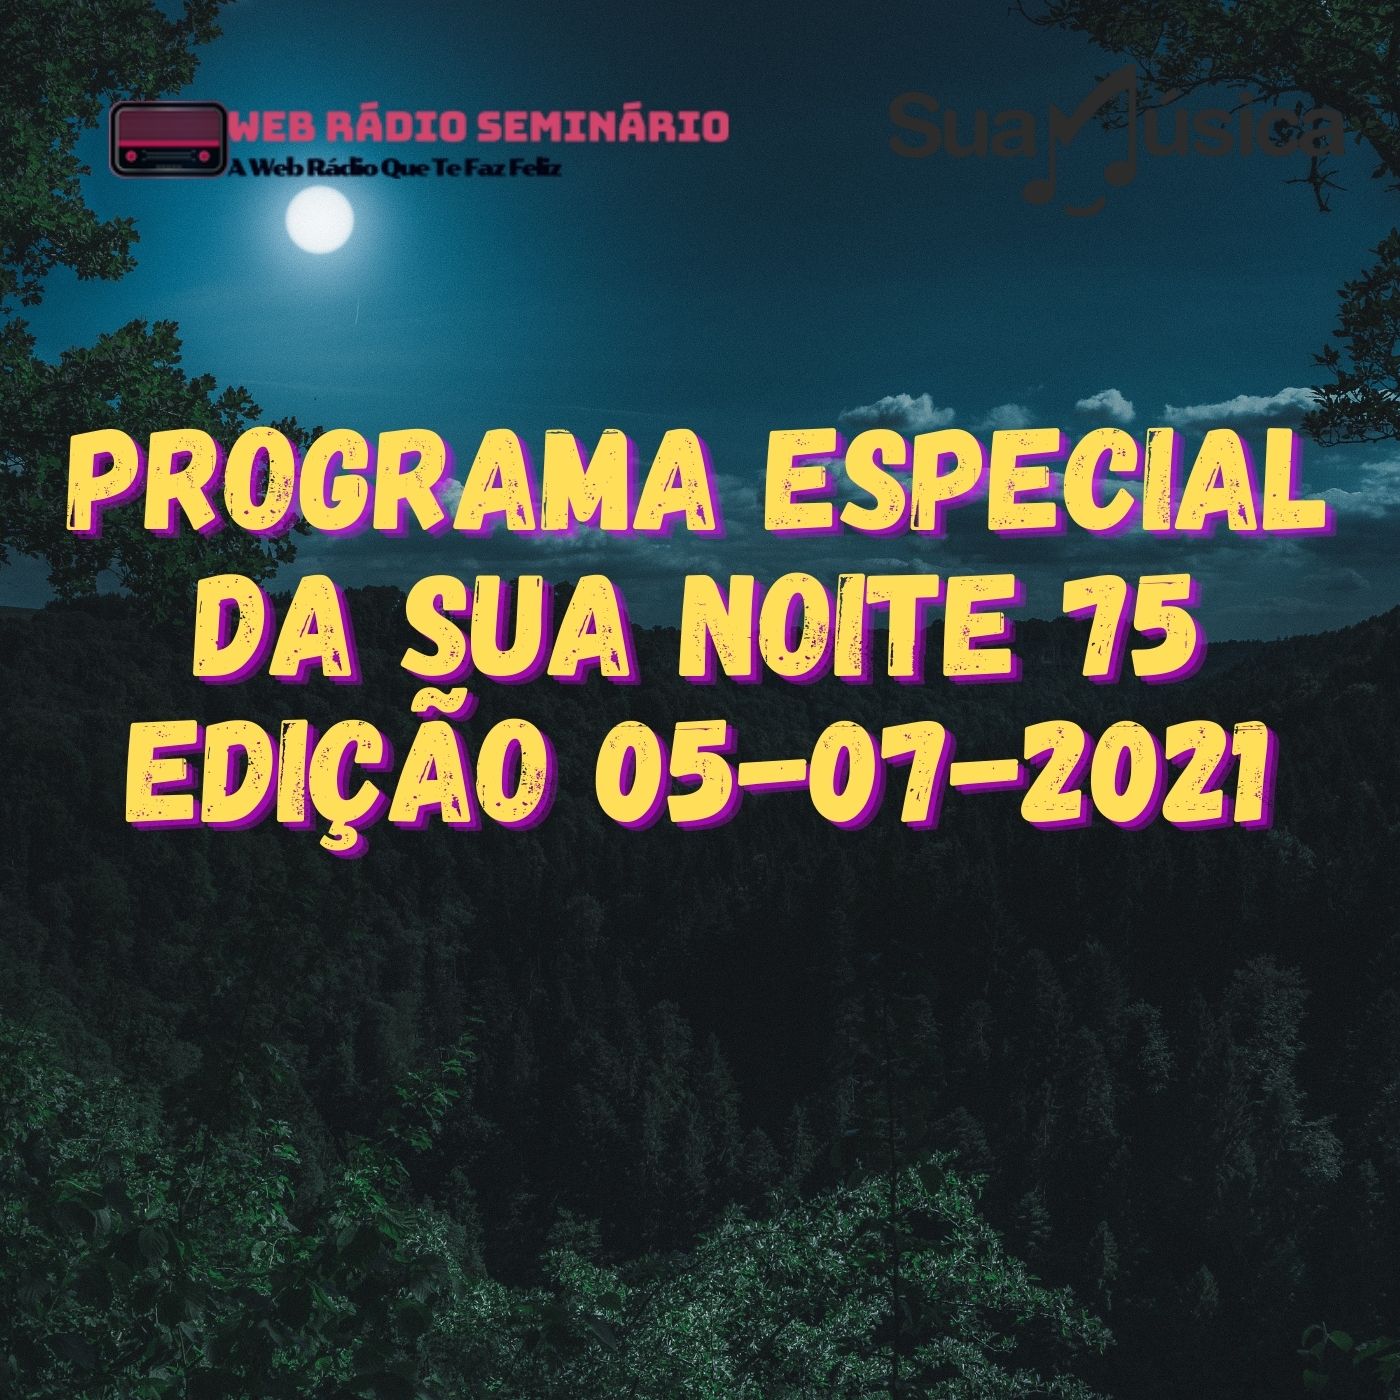 PROGRAMA ESPECIAL DA SUA NOITE-75 EDIÇAO 05-07-2021